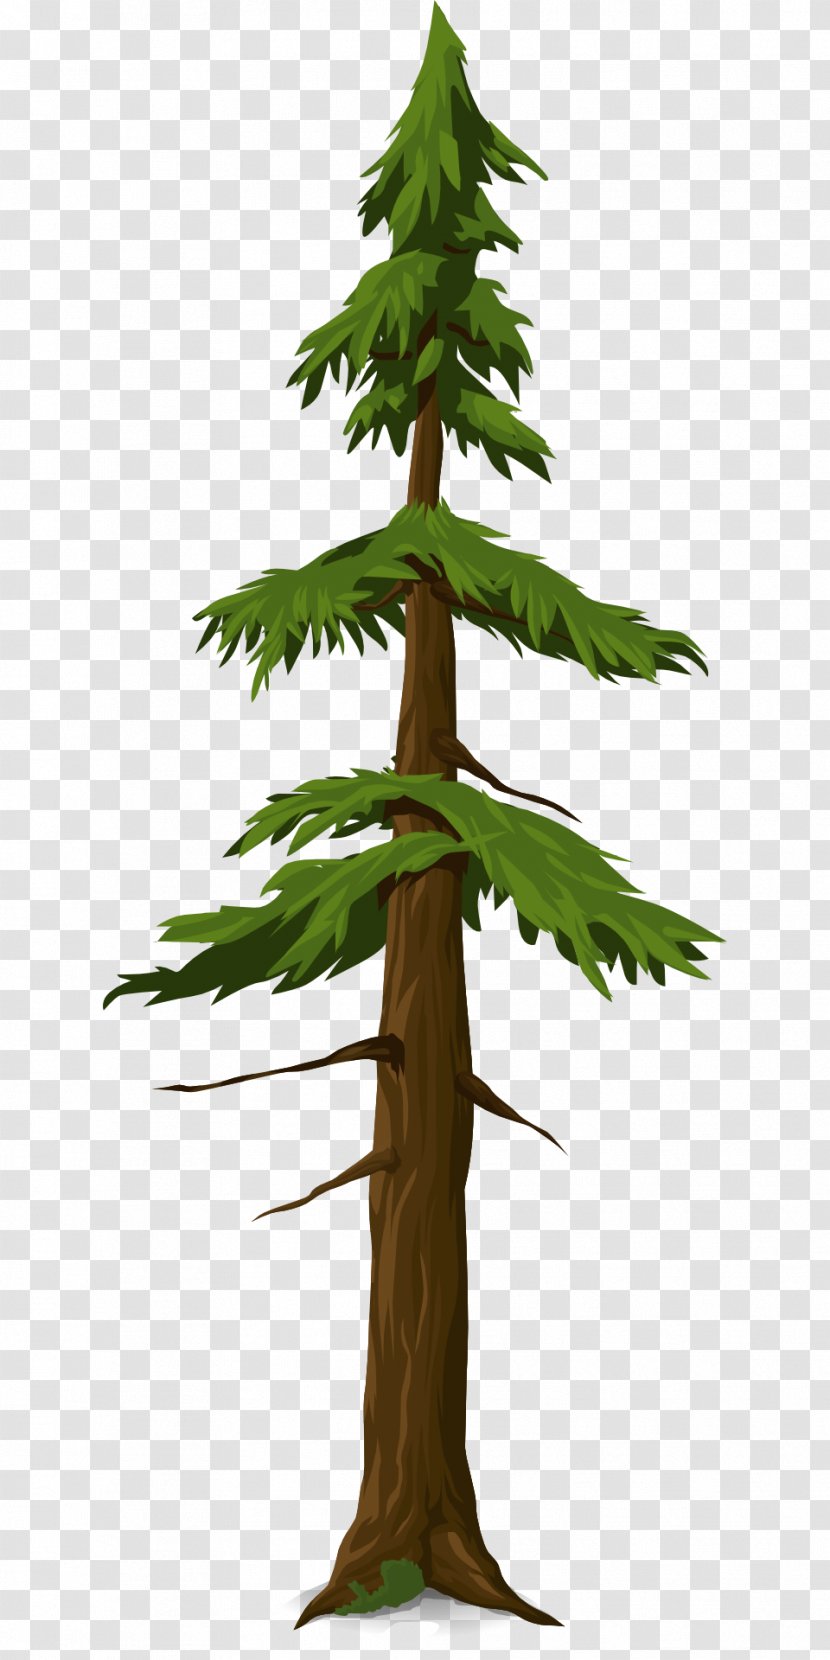 Running Boy - Pine Family - Fir-tree Transparent PNG